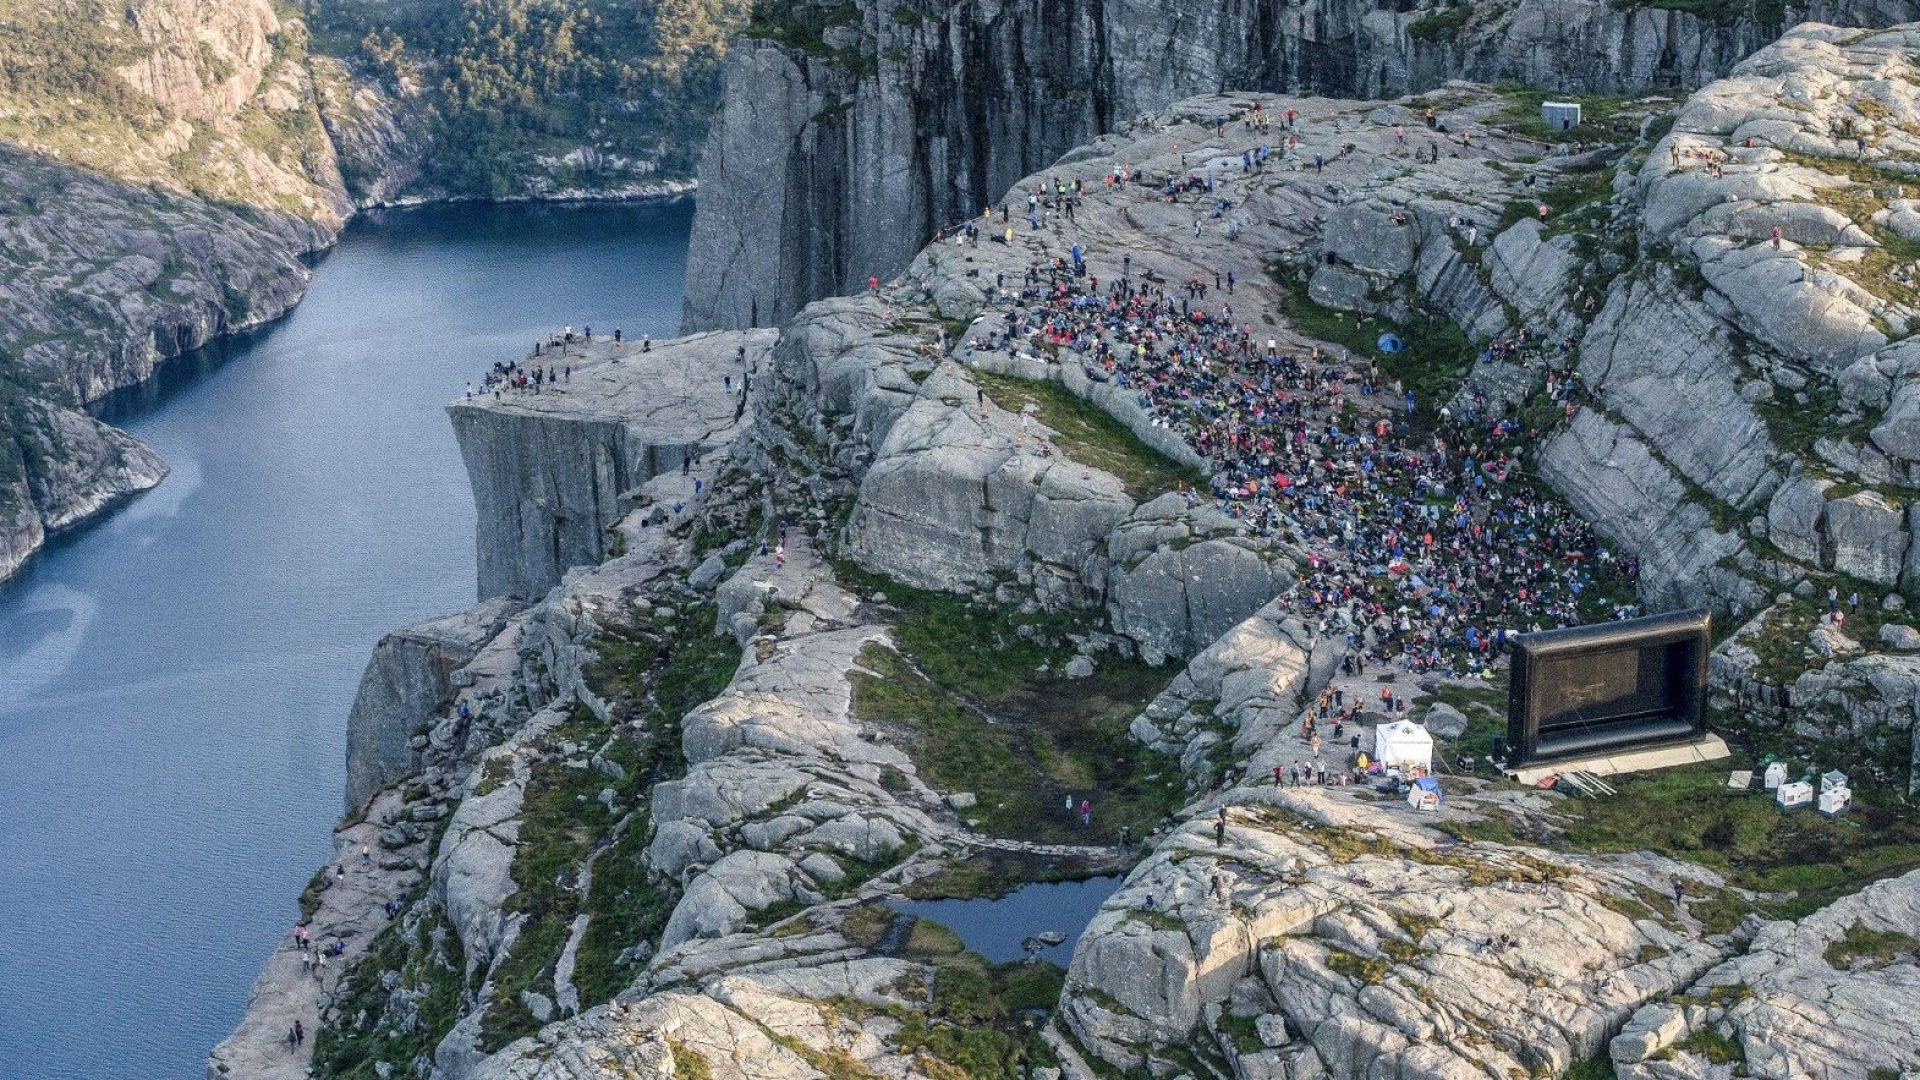 Последната част от "Мисията невъзможна" на екран в прочутата местност "Пълпит рок", недалеч от Ставангер, в югозападната част на Норвегия - 1 август, 2018